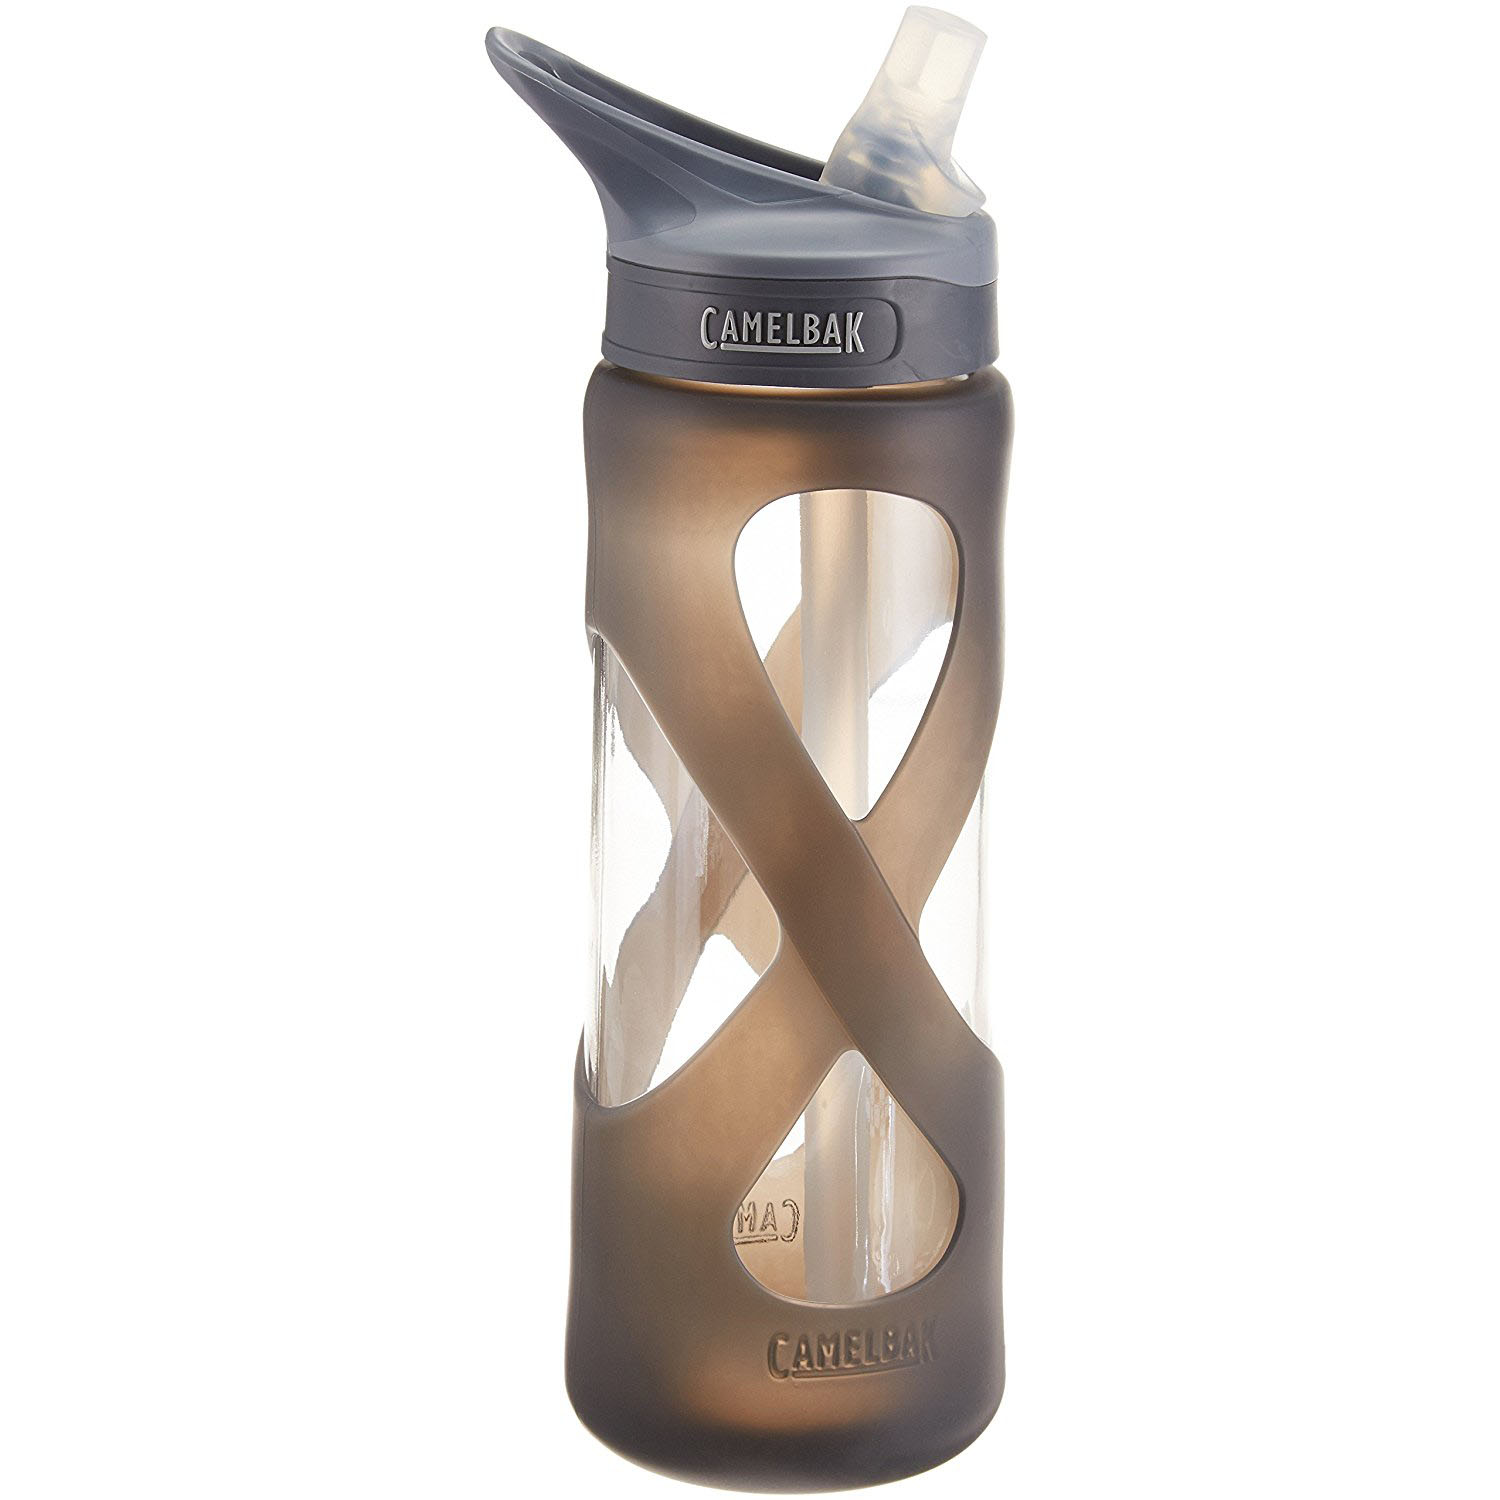 Prime Members: Camelbak Eddy glass water bottle for $9